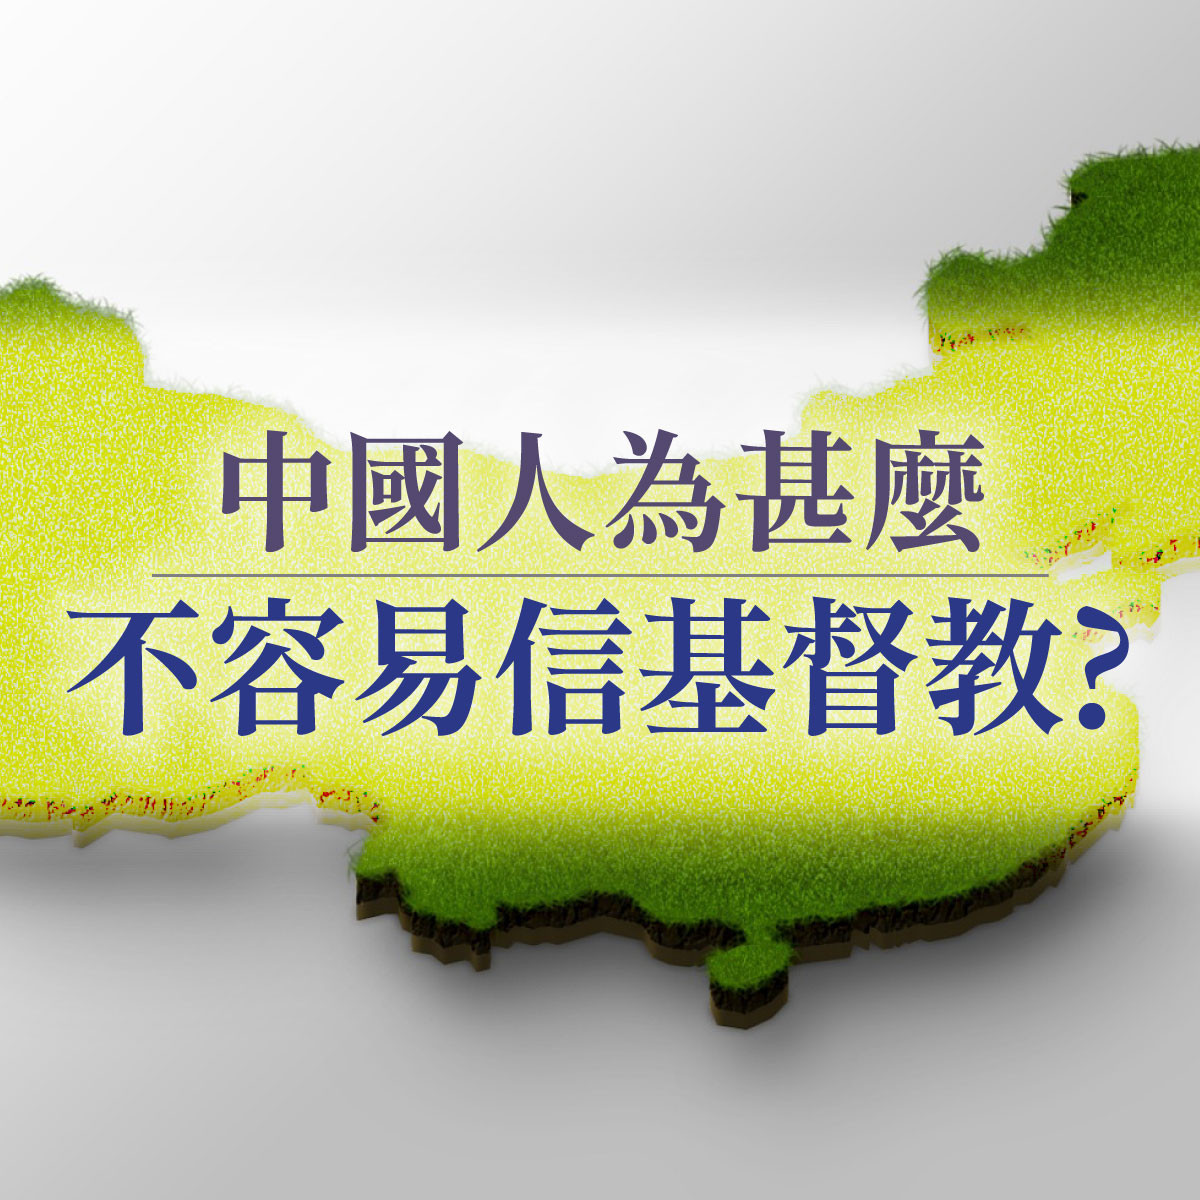 中國人為什麼不容易信基督教 - 第四講 - 民族主義的波浪封面圖